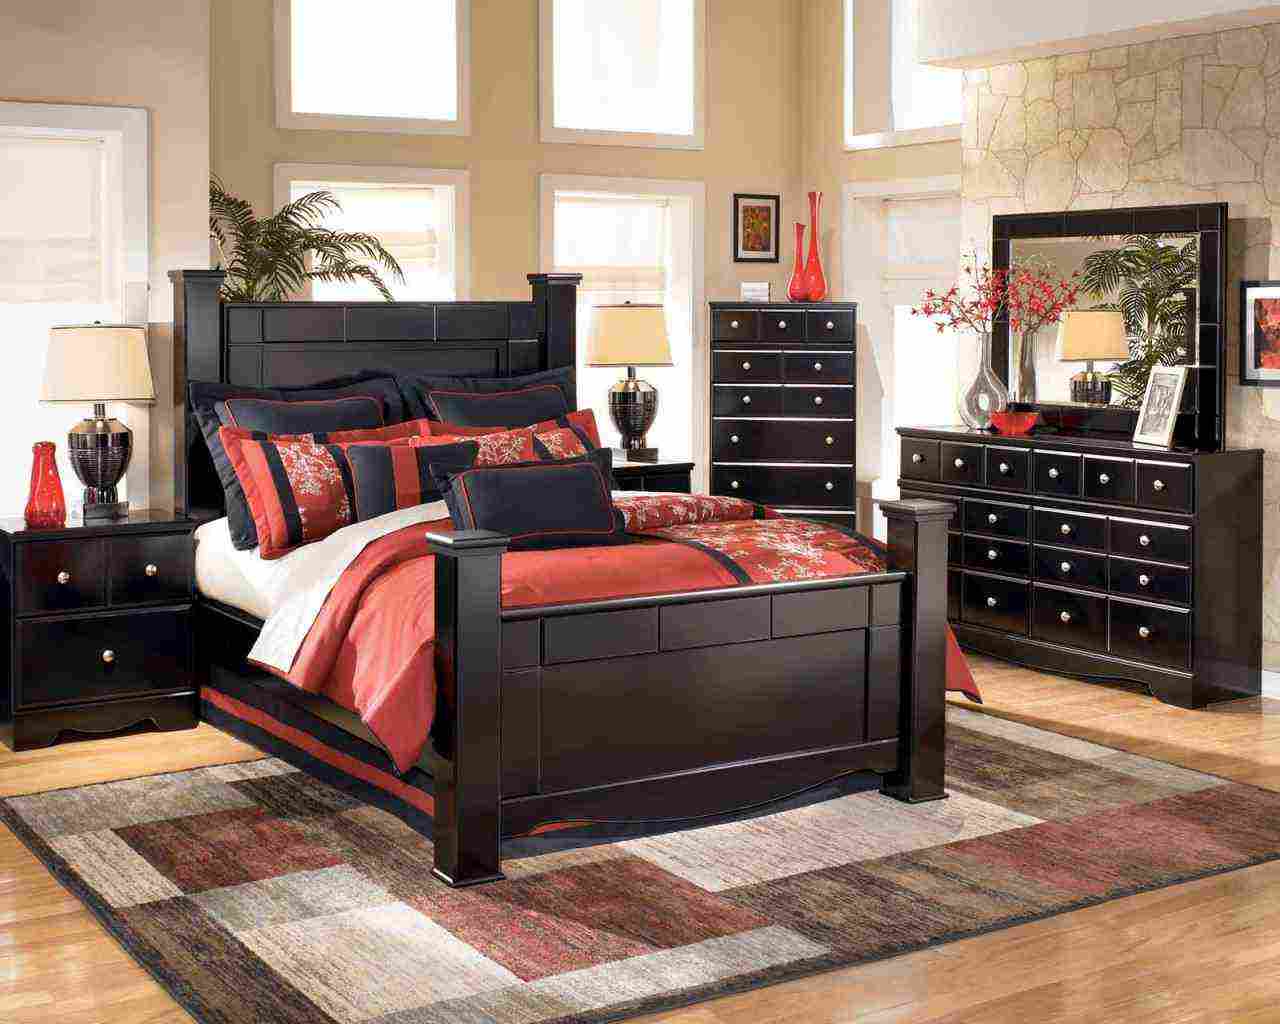 Black Wood Bedroom Furniture - Decor Ideas